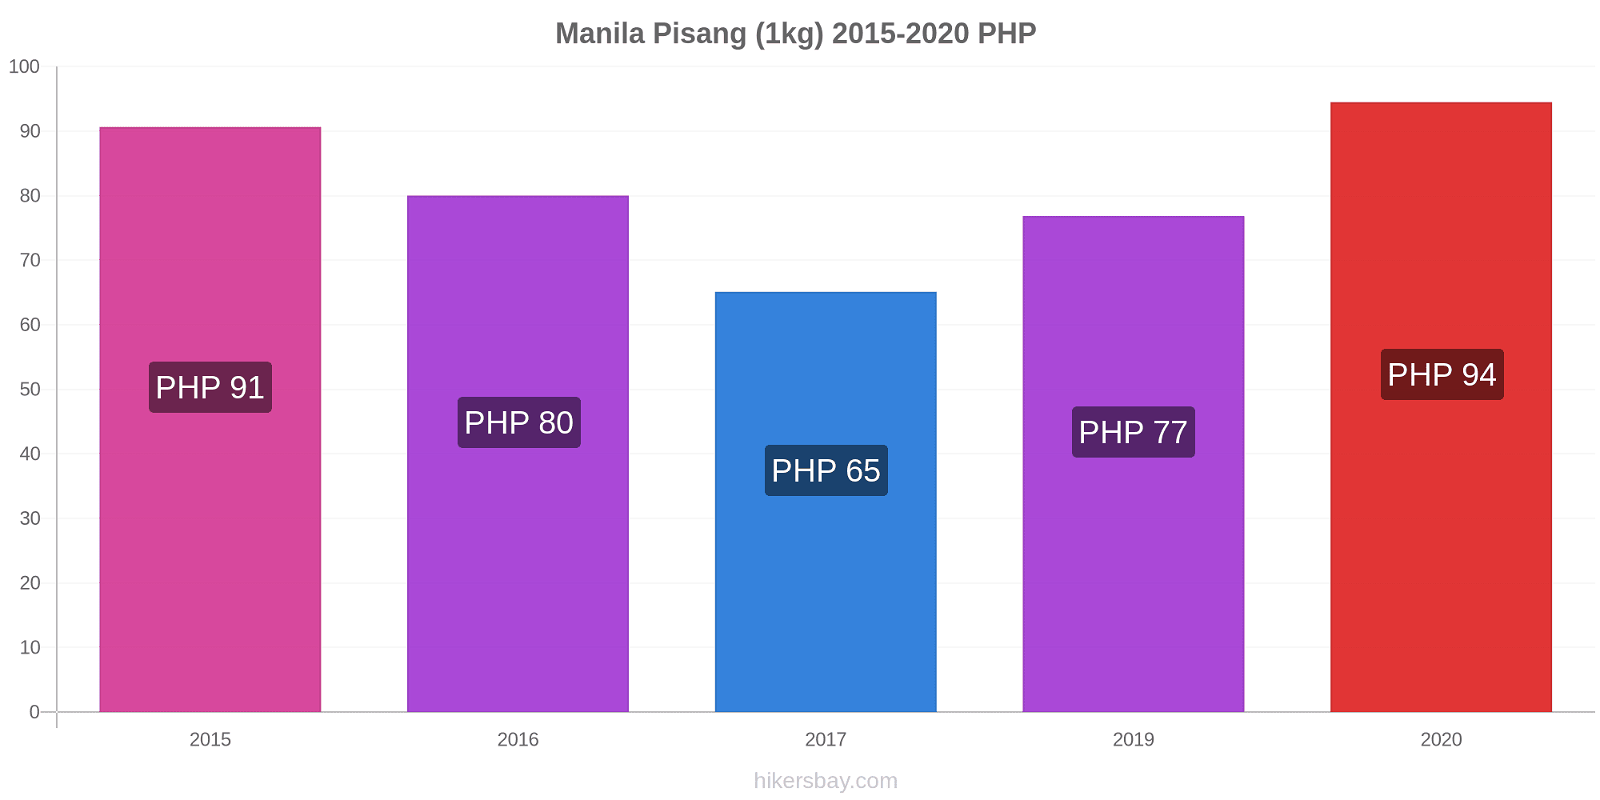 Manila perubahan harga Pisang (1kg) hikersbay.com